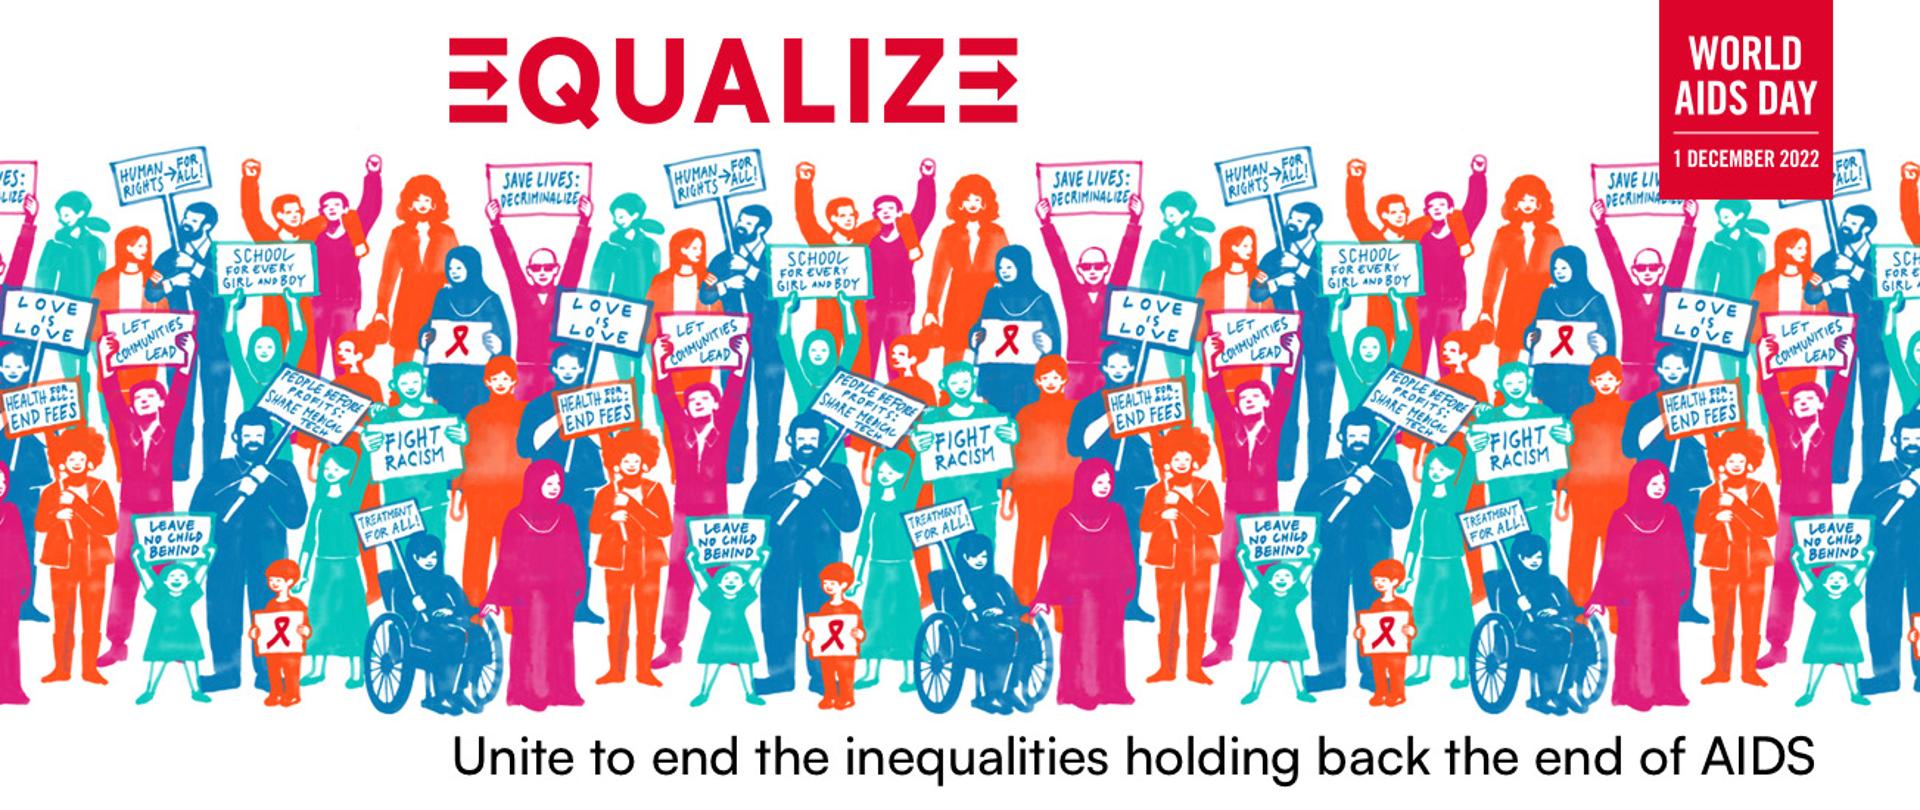 Plakat kampanii Światowego Dnia AIDS 2022 - z hasłem "Equalize" czyli "Wyrównujmy", postaci graficzne ludzi z transparentami, na których widnieją hasła o tolerancji i wsparciu